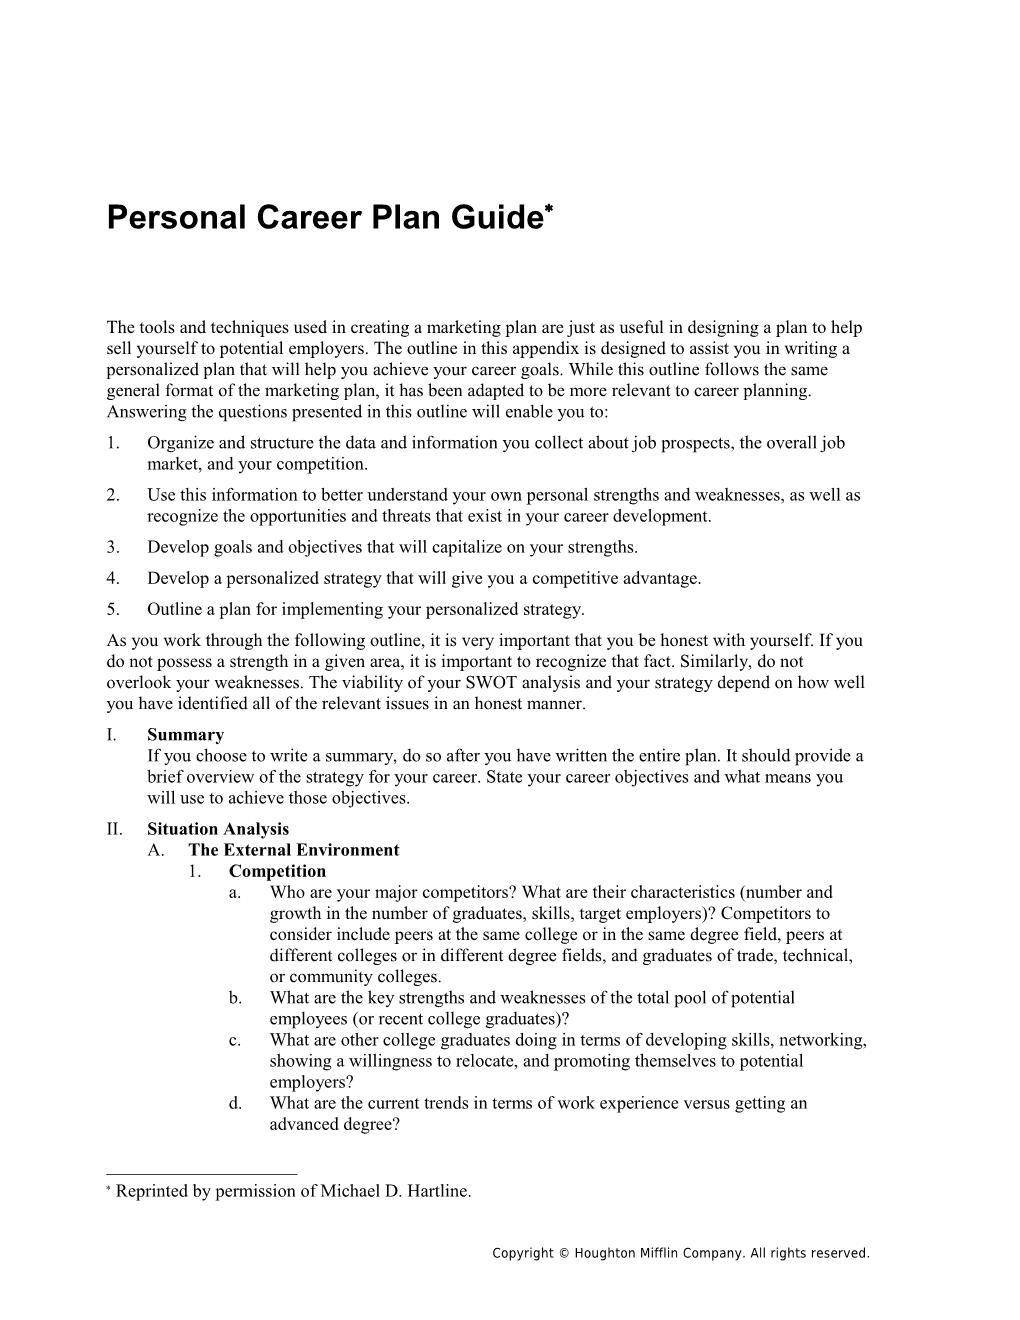 Appendix B: Personal Career Plan Guide 1